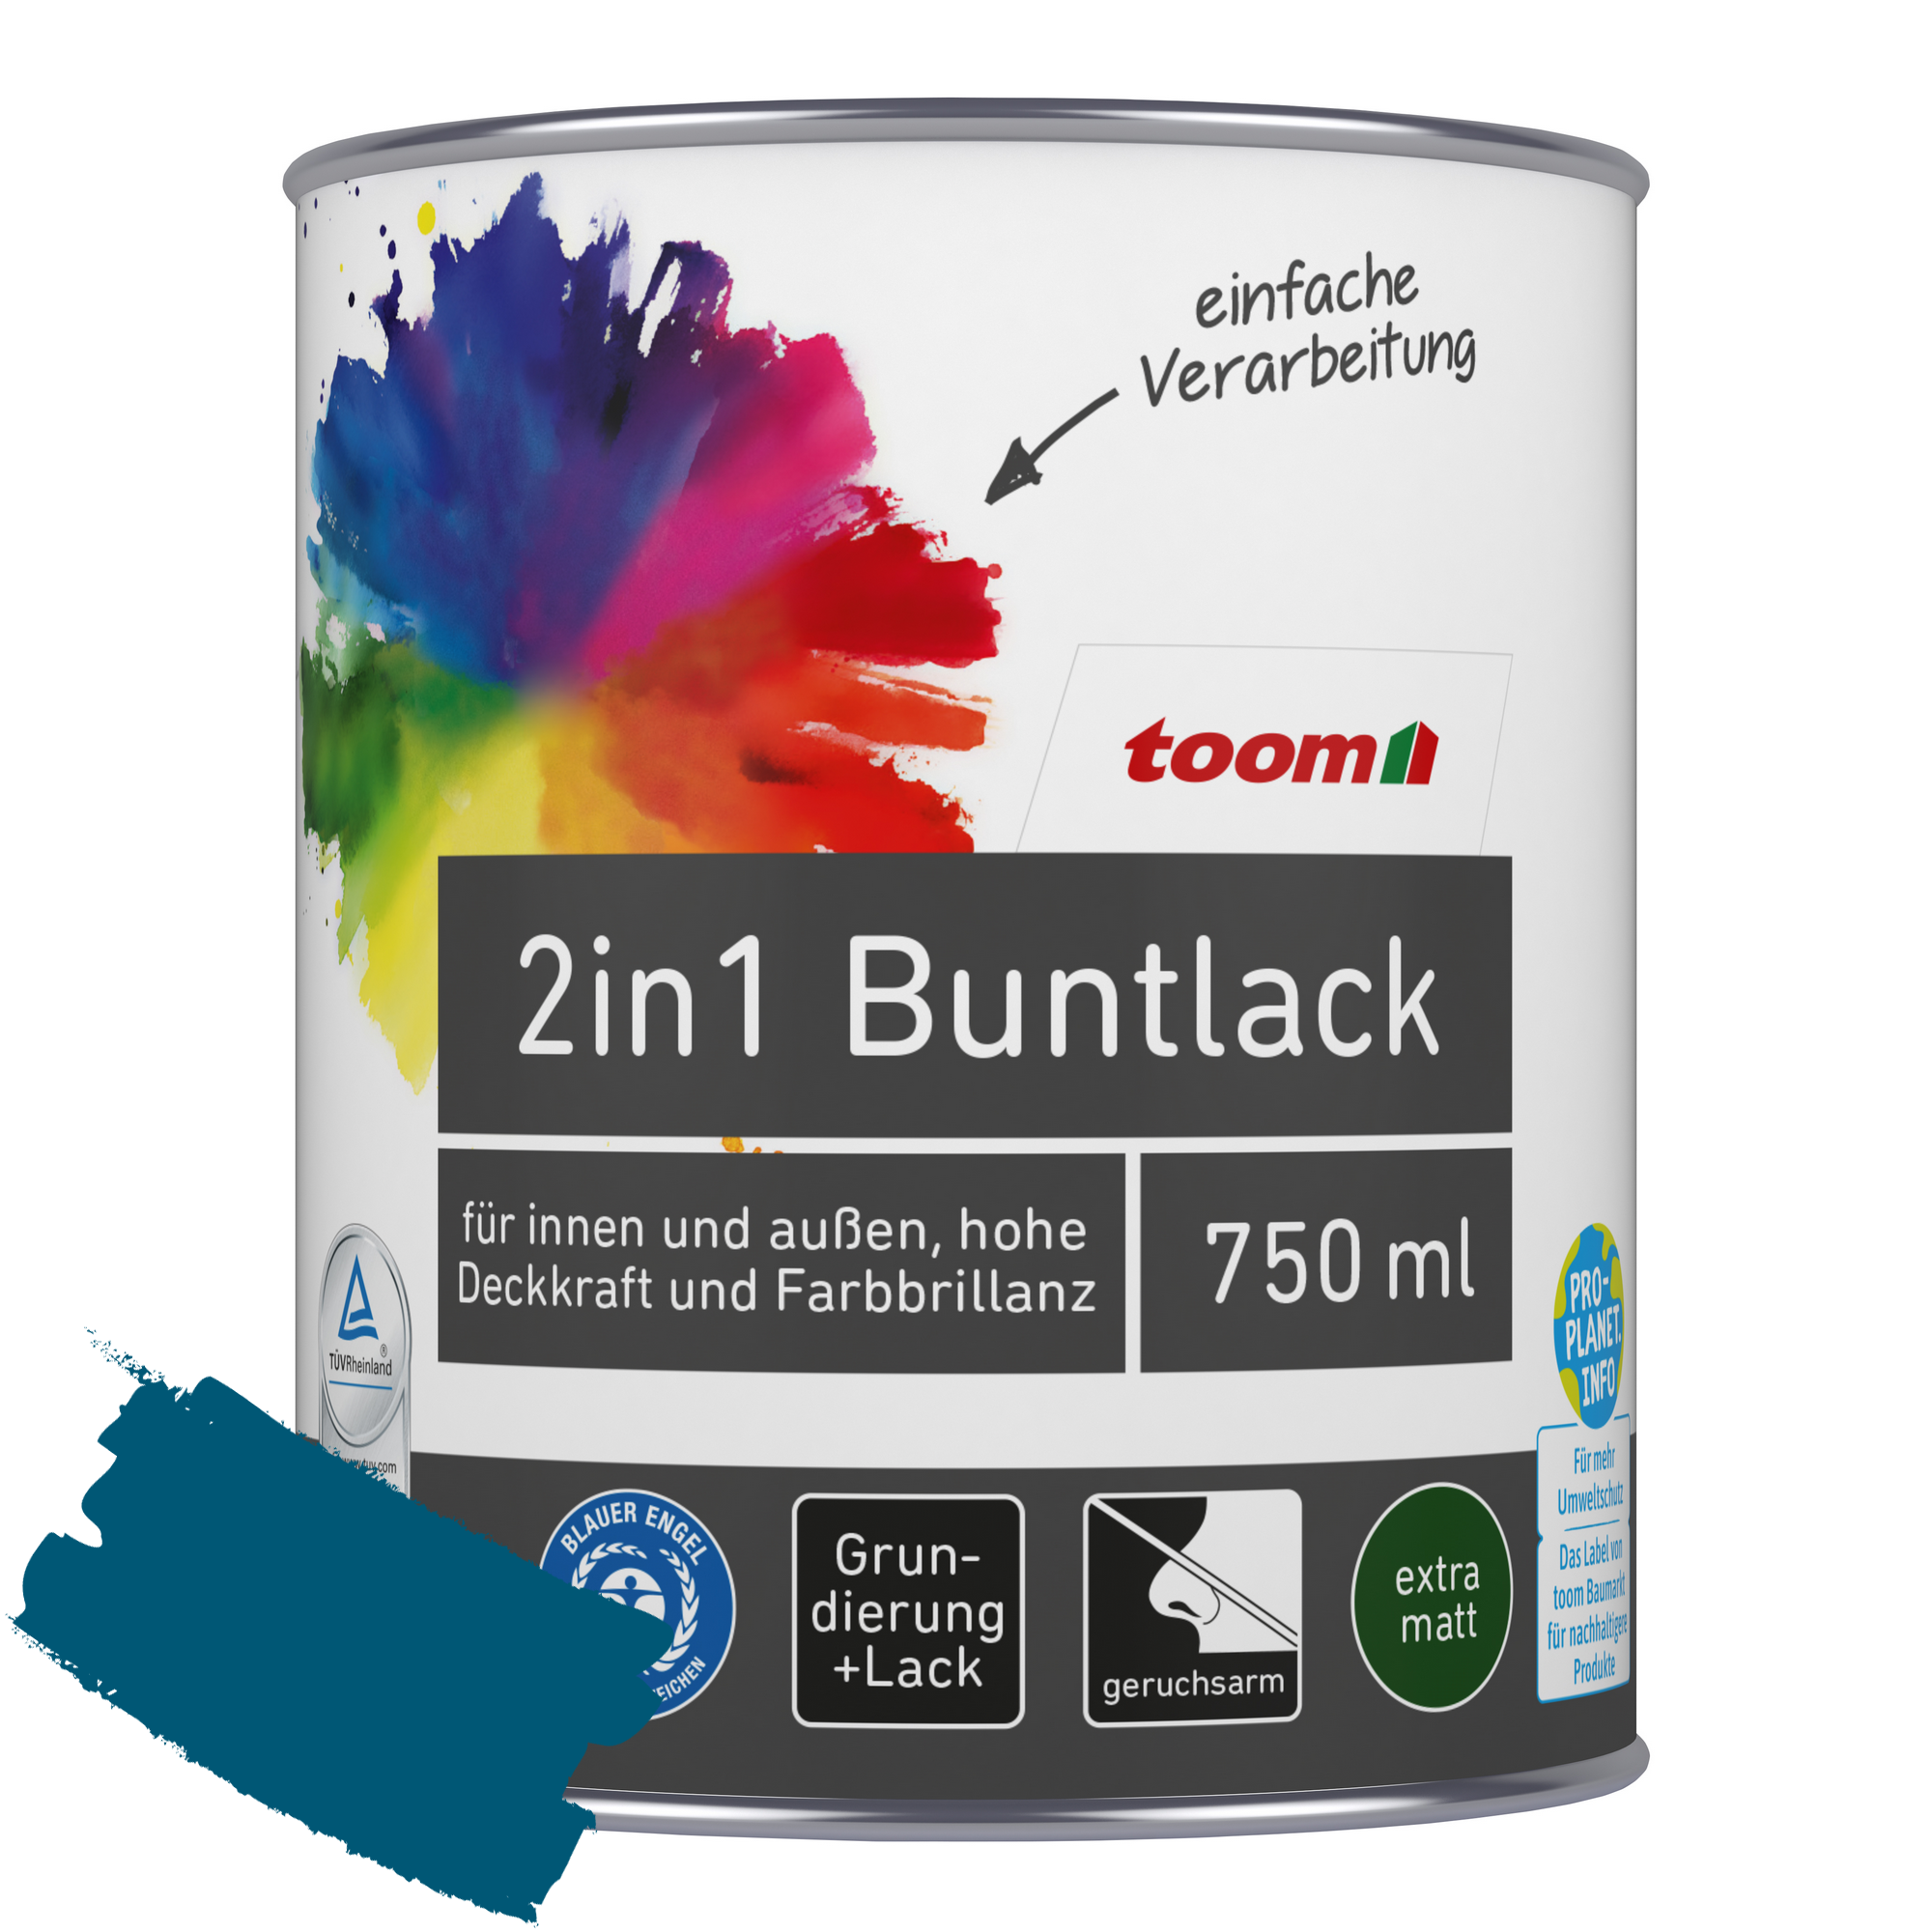 2in1 Buntlack 'Blaupause' enzianblau matt 750 ml + product picture